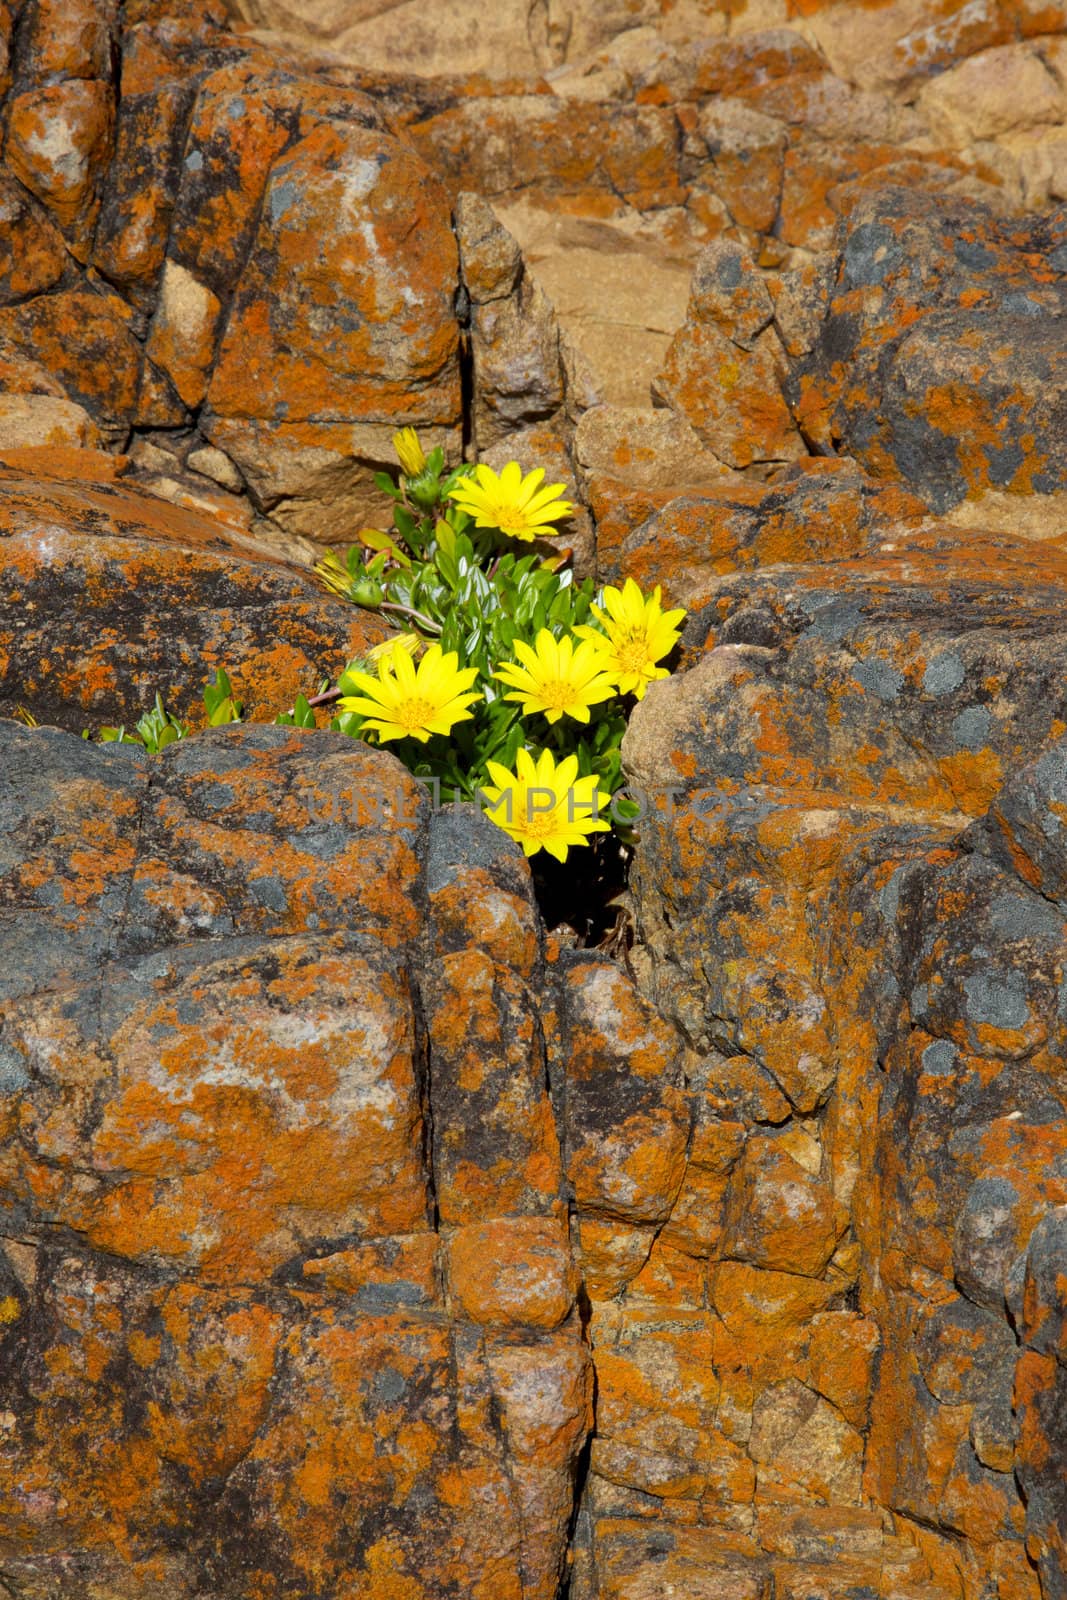 Rock and Flower Abstract by zambezi